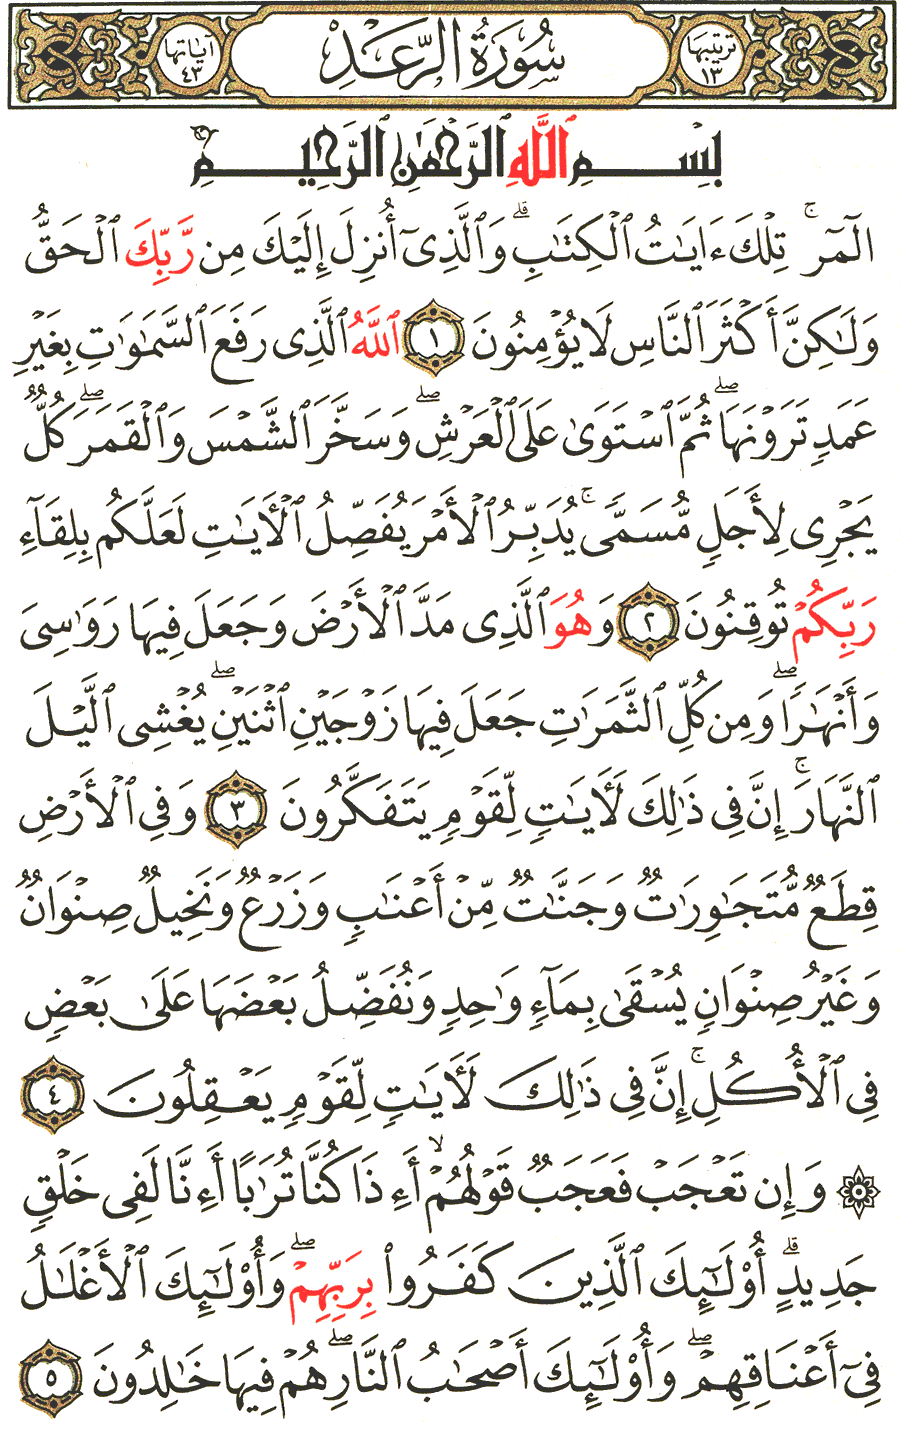 الصفحة رقم 249  من القرآن الكريم مكتوبة من المصحف